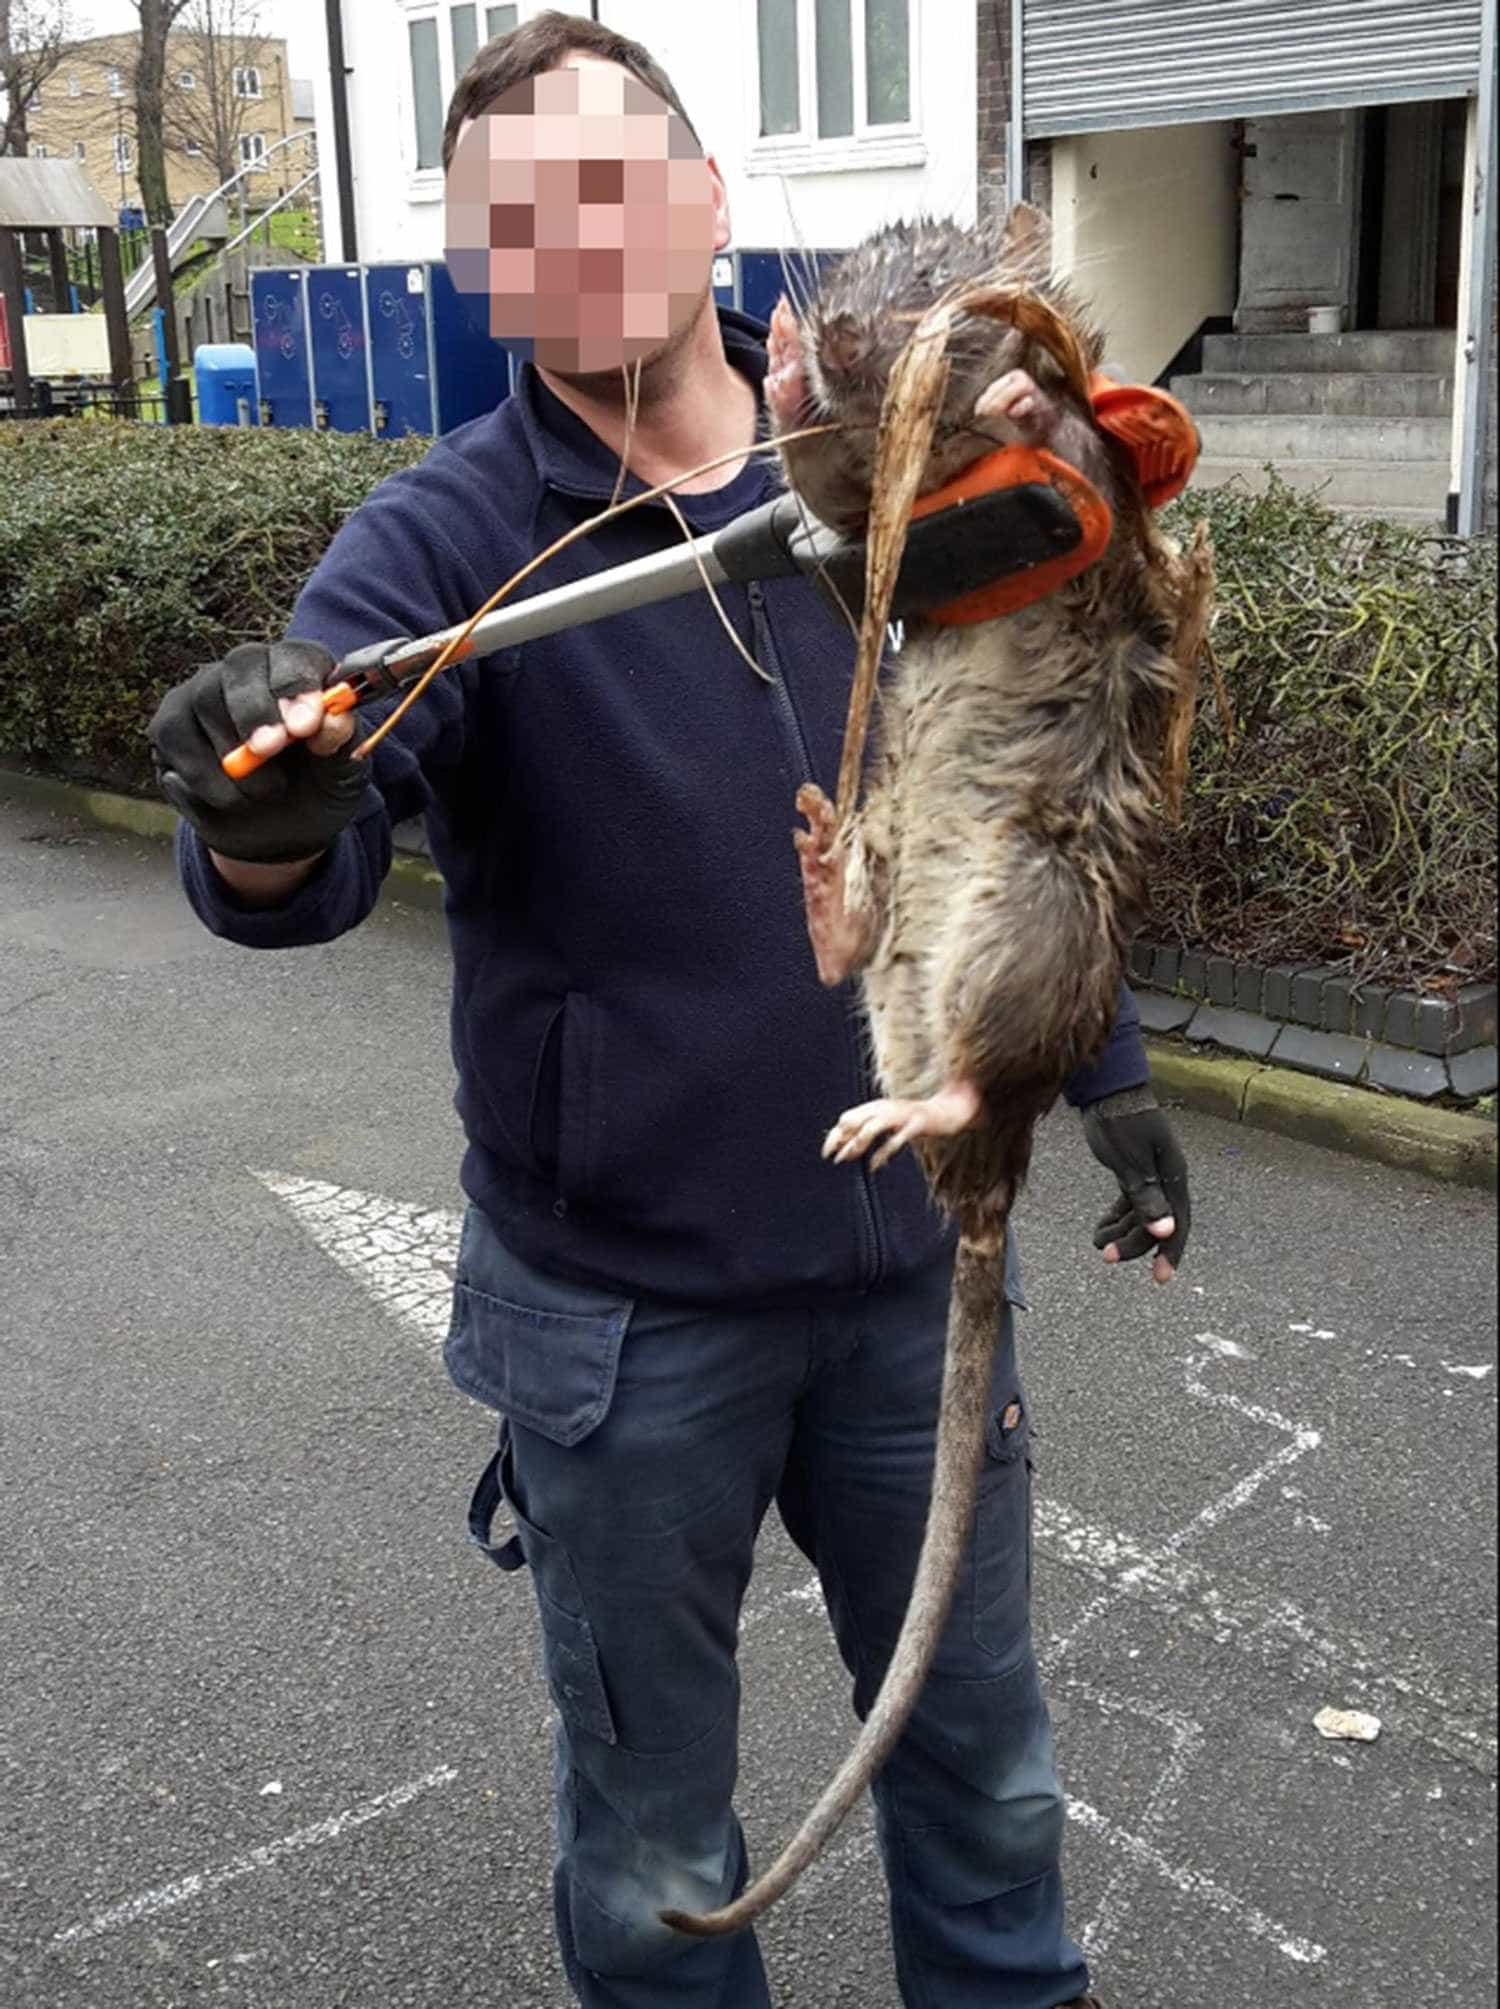 Capturada ratazana gigante nos arredores de Londres